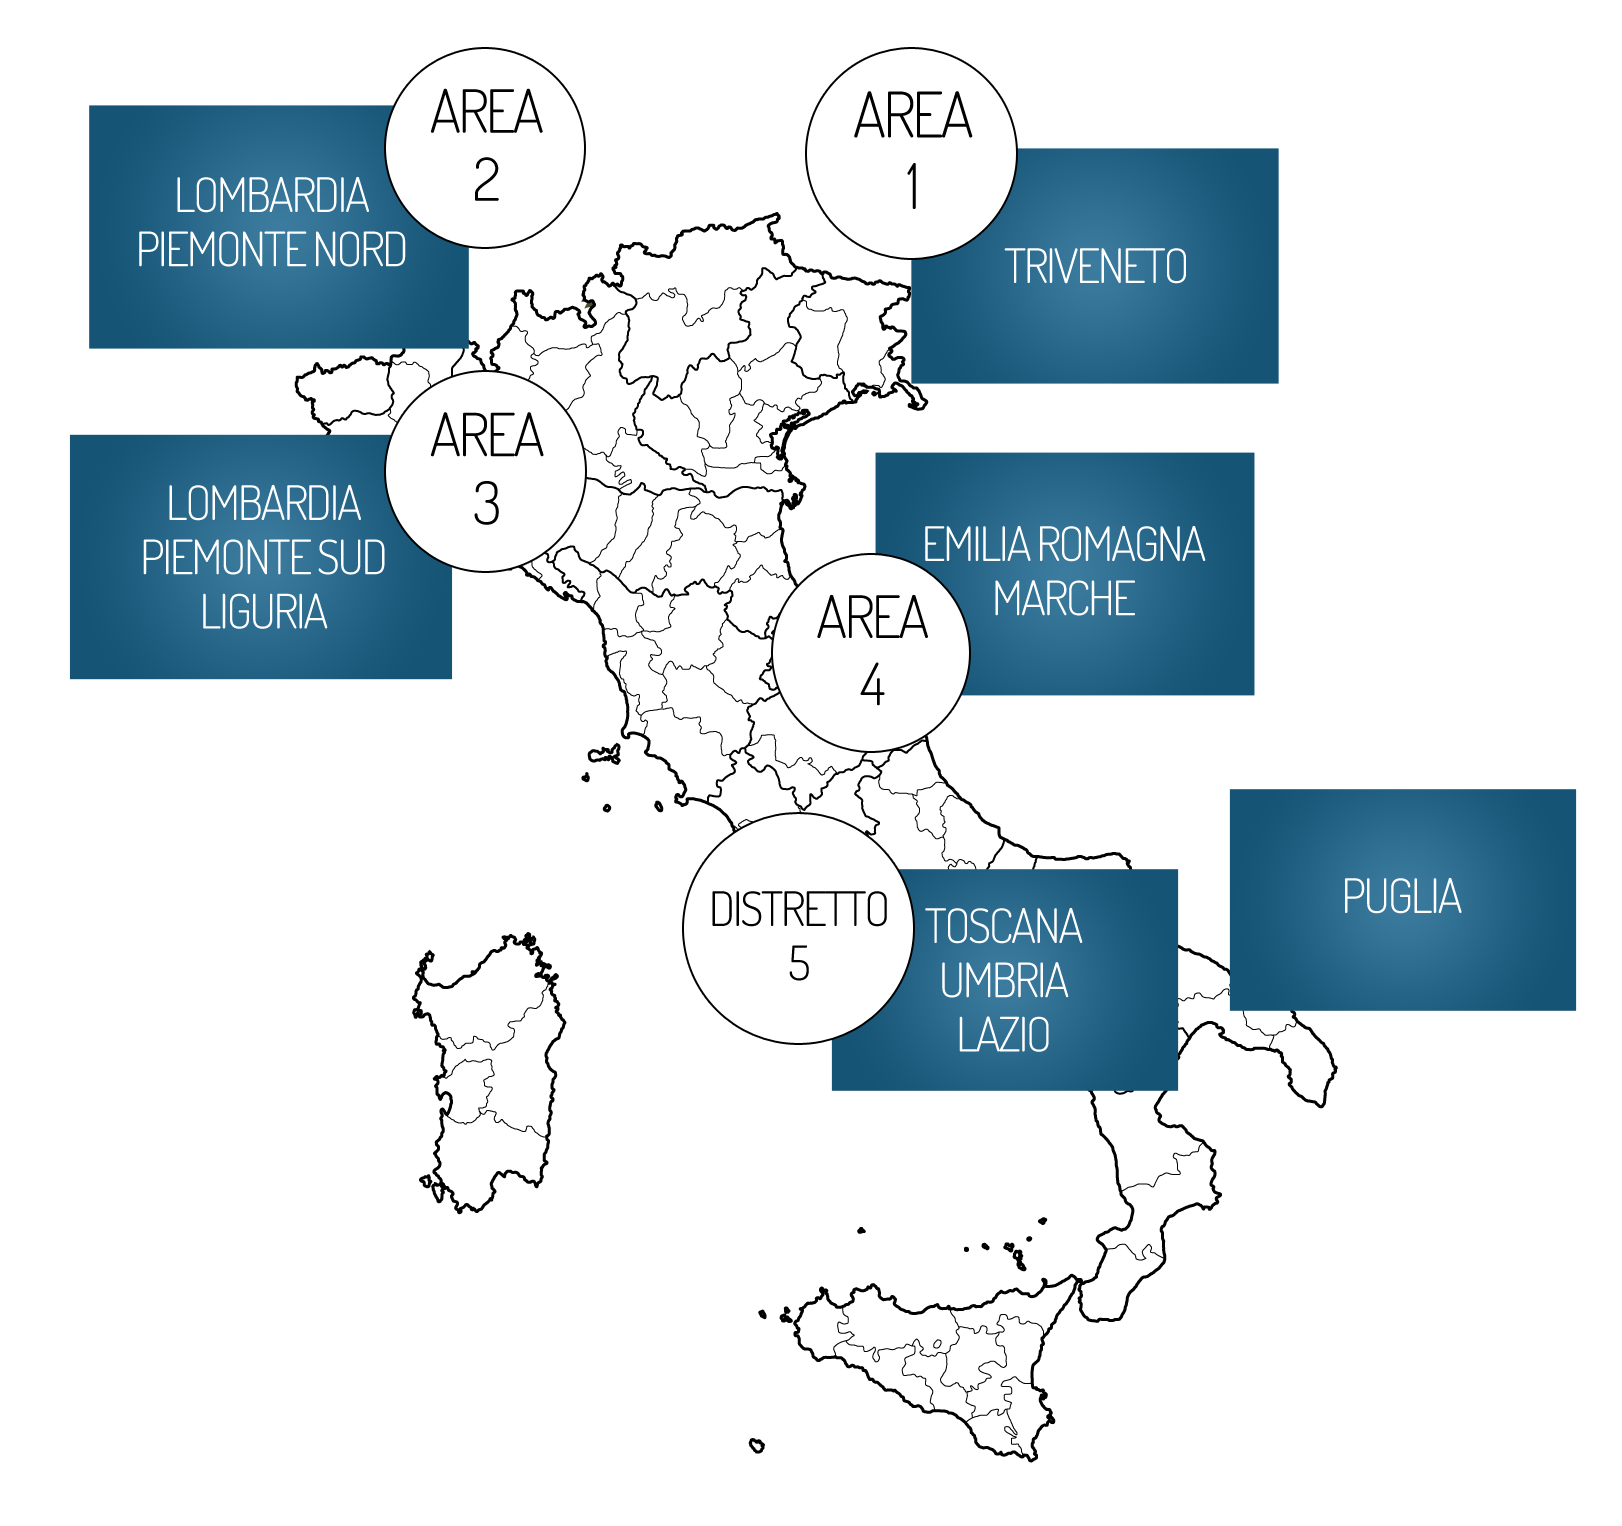 Composizione del mix medio nazionale utilizzato per la produzione dell energia elettrica immessa nel sistema elettrico italiano nel 2011 e 2012.